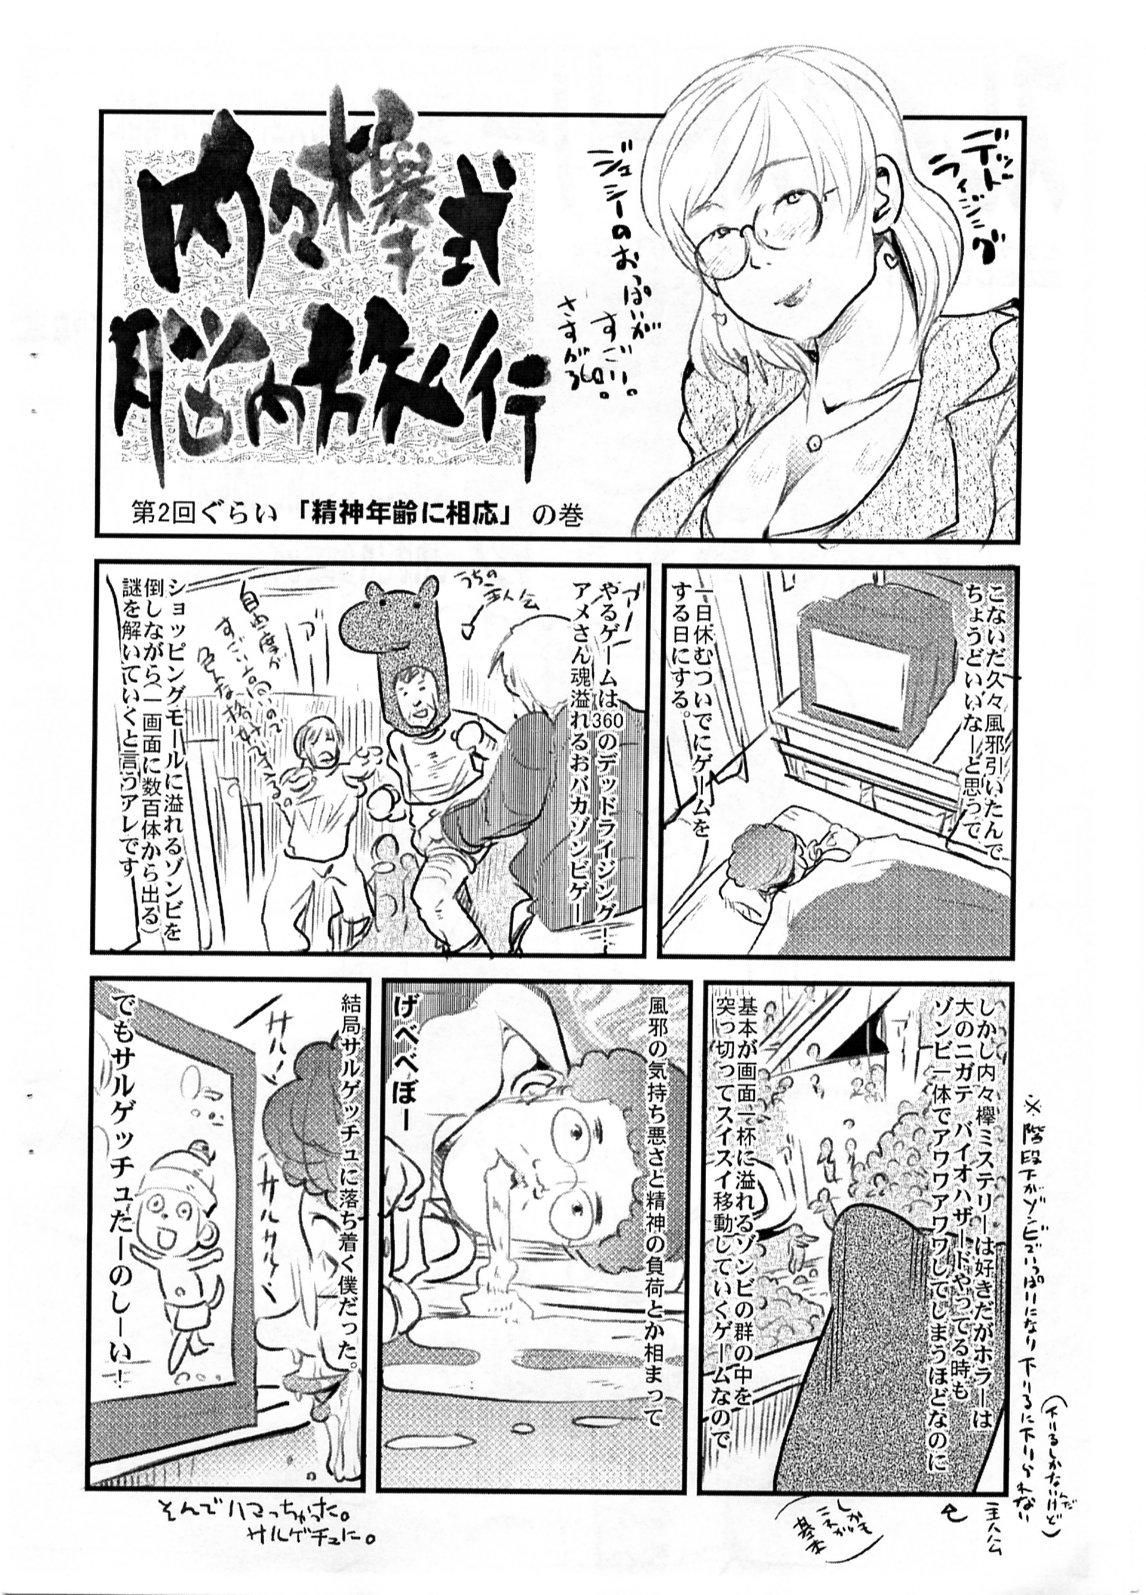 Realsex Yaseiji ni iroiro oshieru hon nano da - Digimon savers Muscles - Page 11